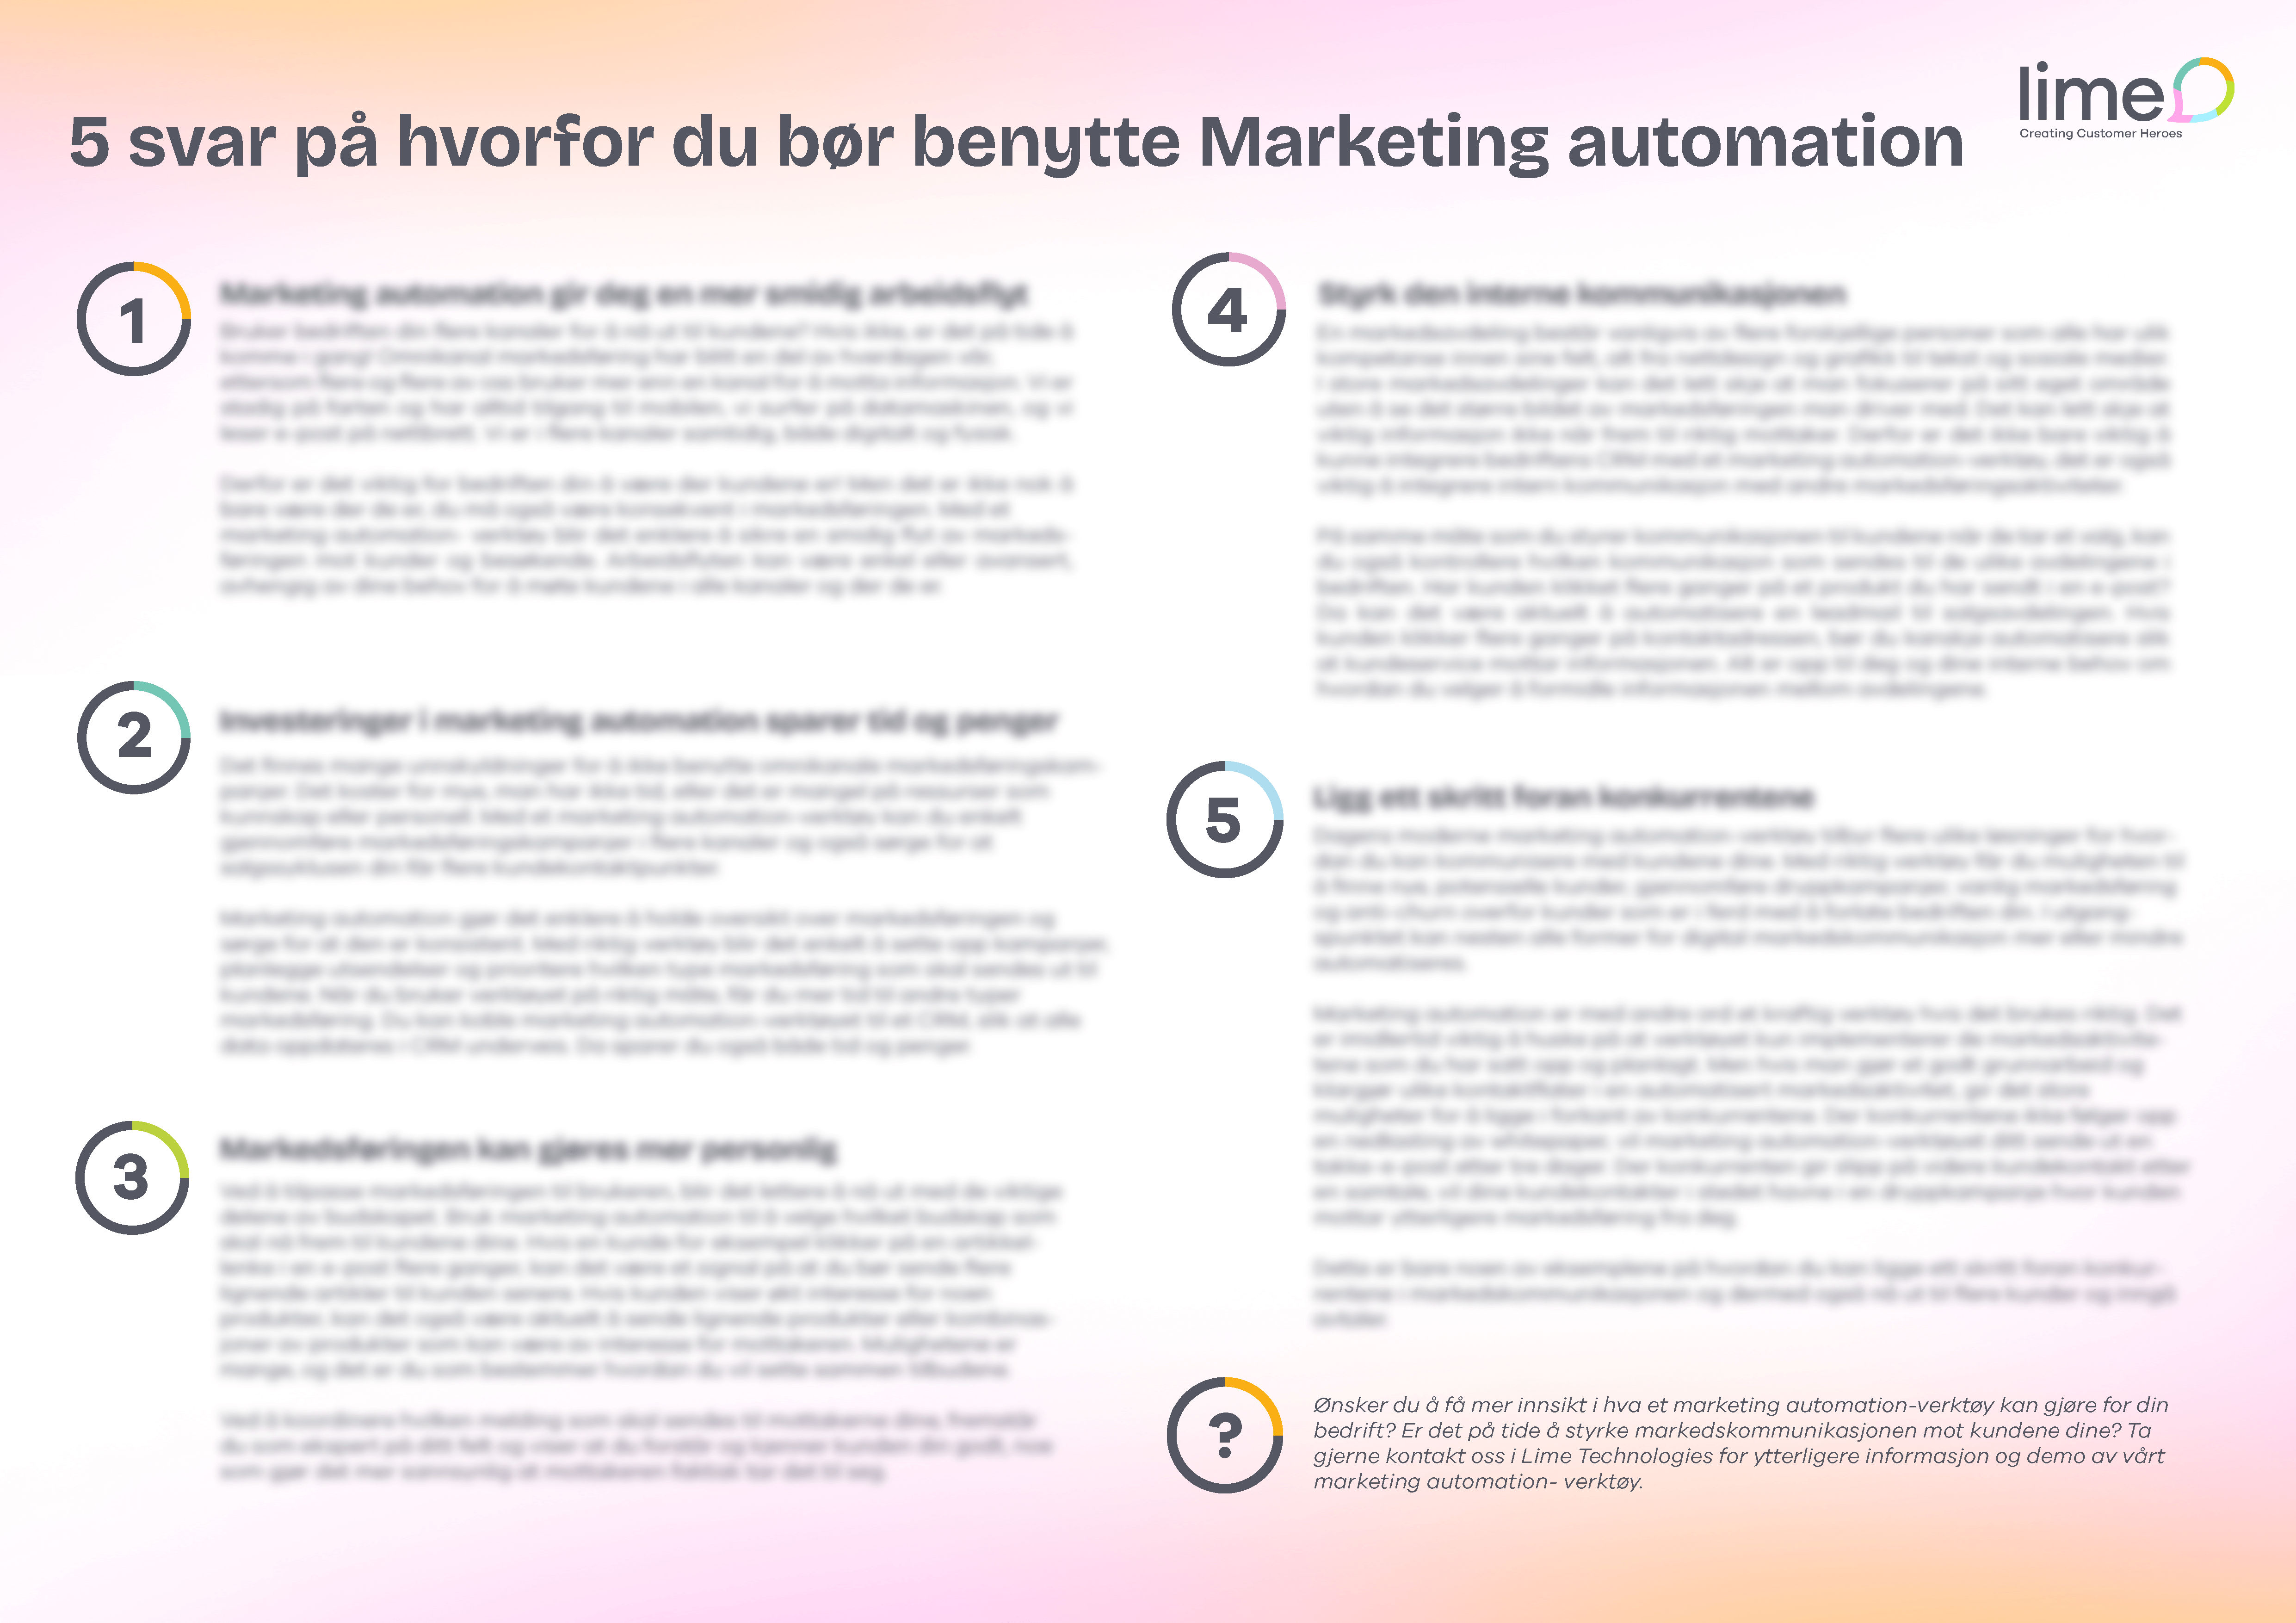 Poster: 5 svar på hvorfor du bør ha Marketing Automation